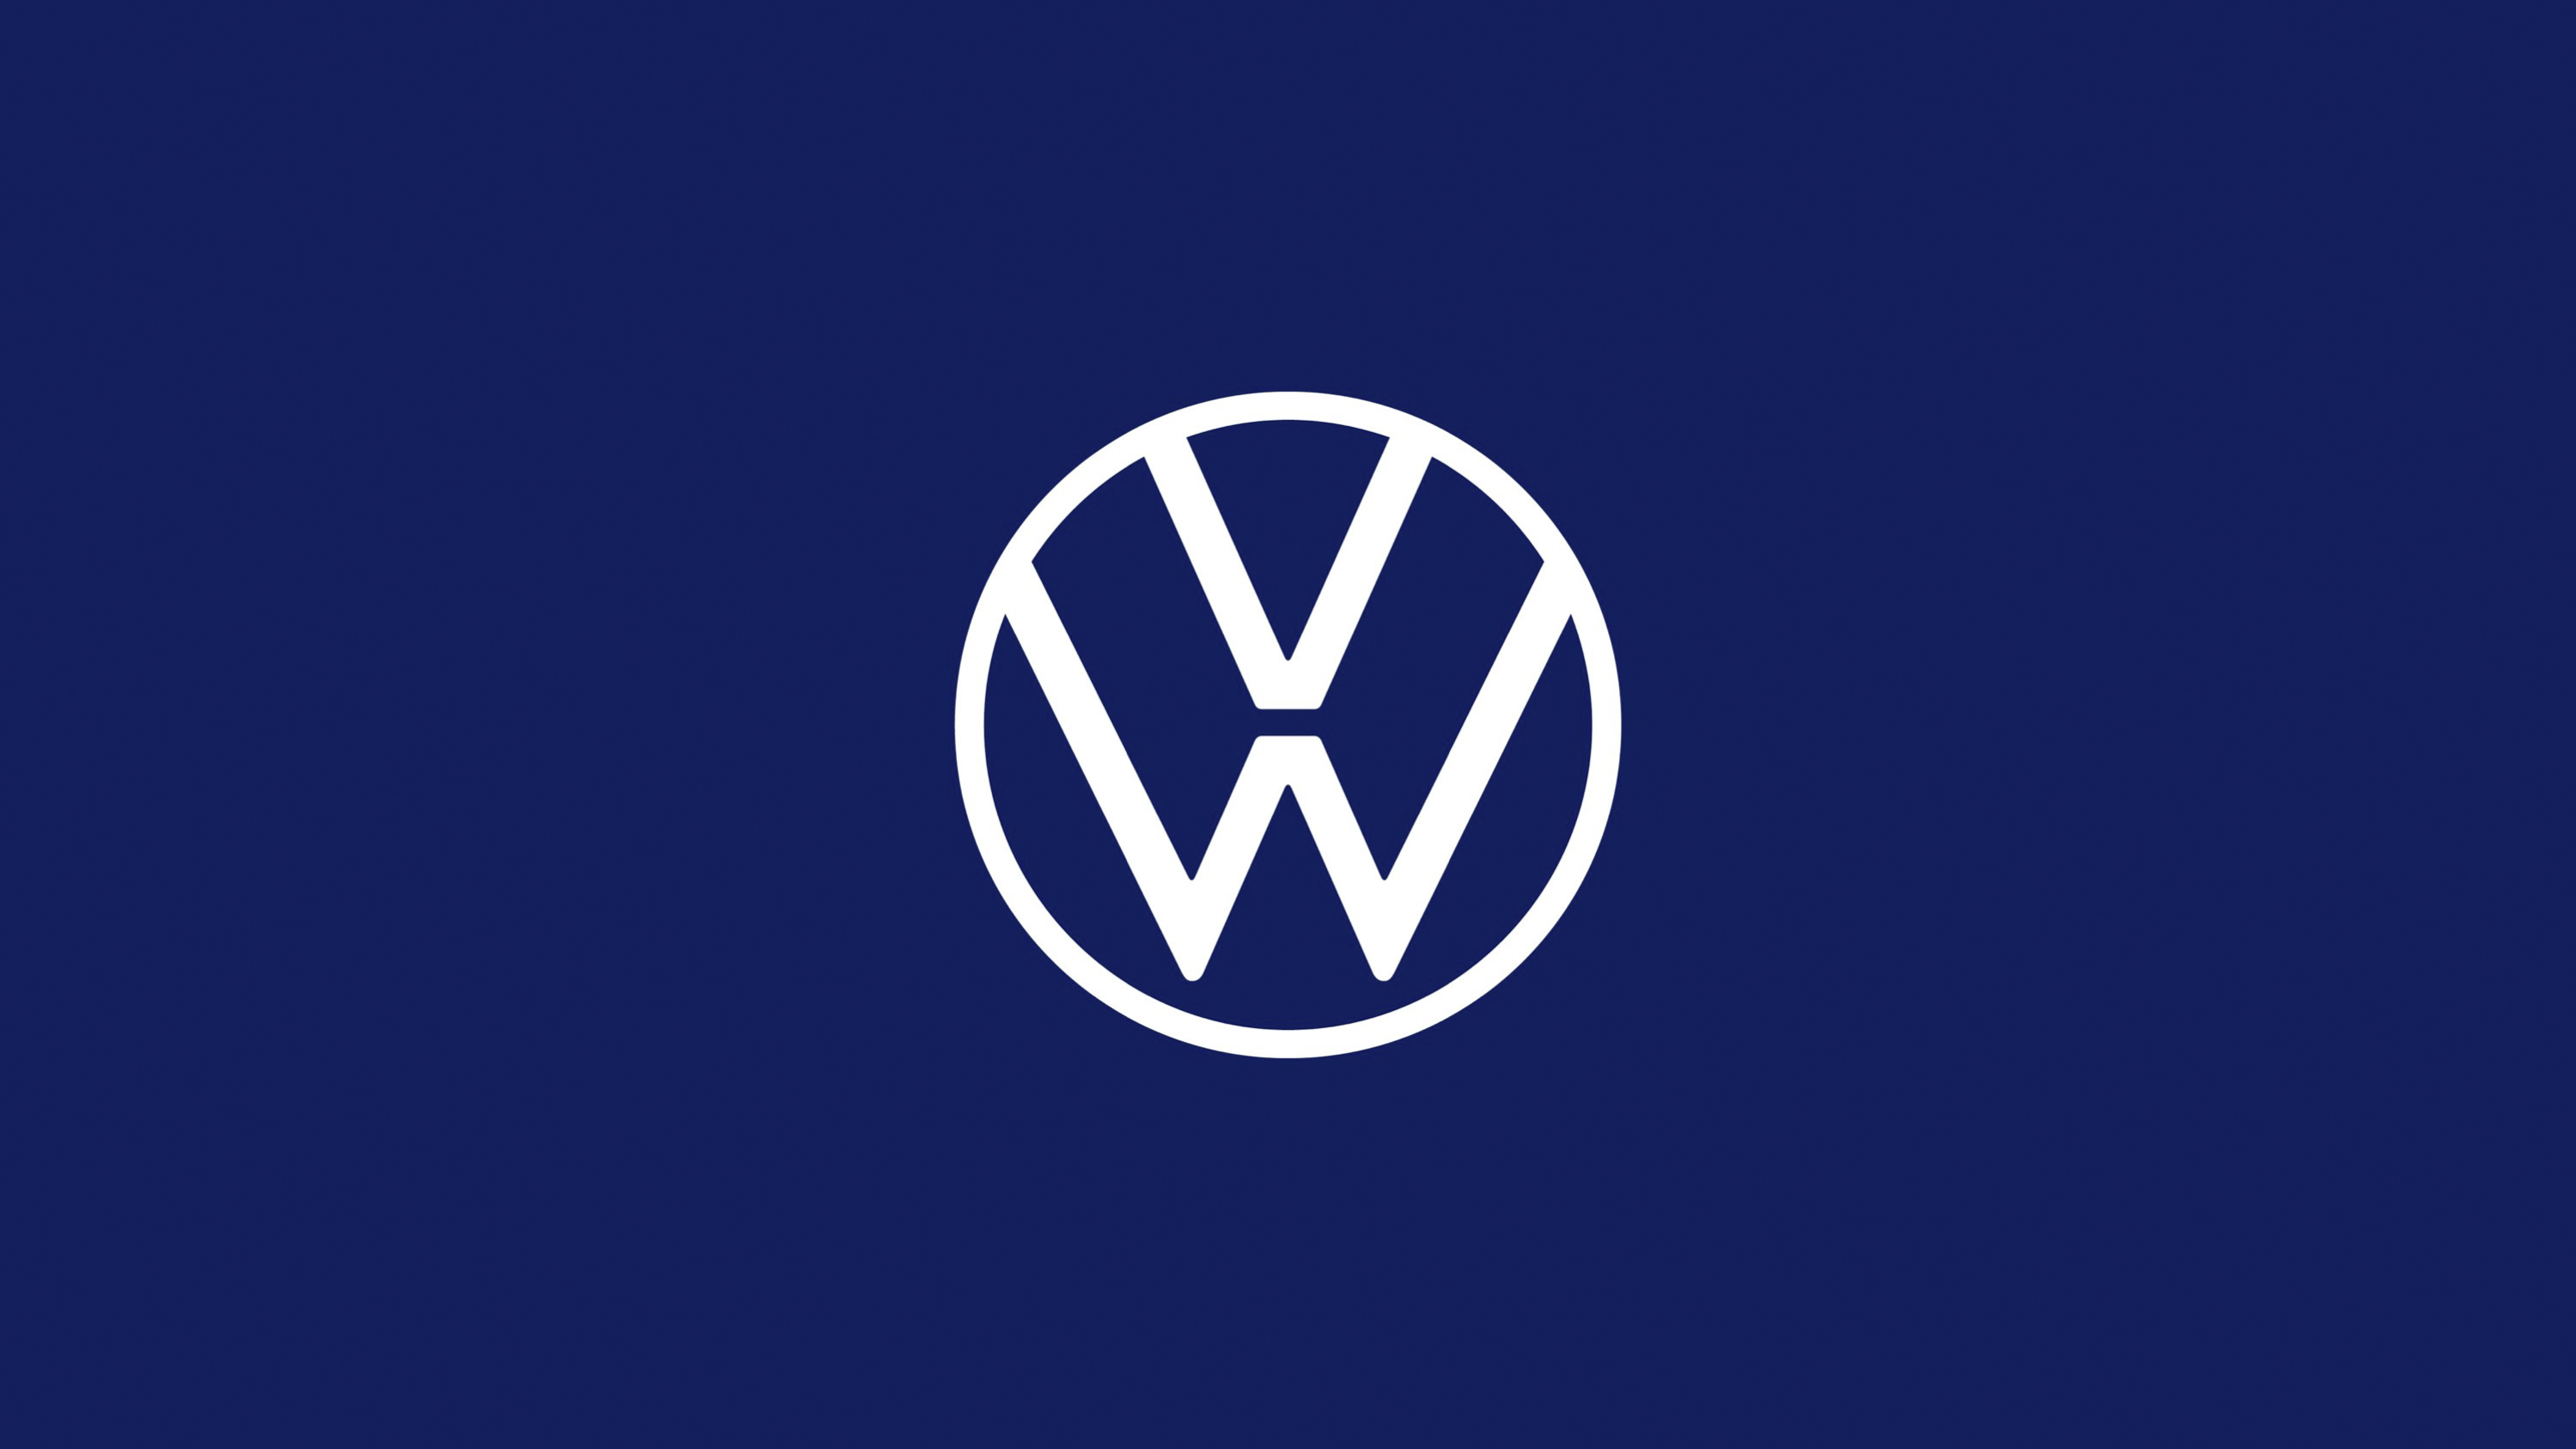 Курсовая работа по теме Тяговый расчёт автомобиля Volkswagen Passat B5